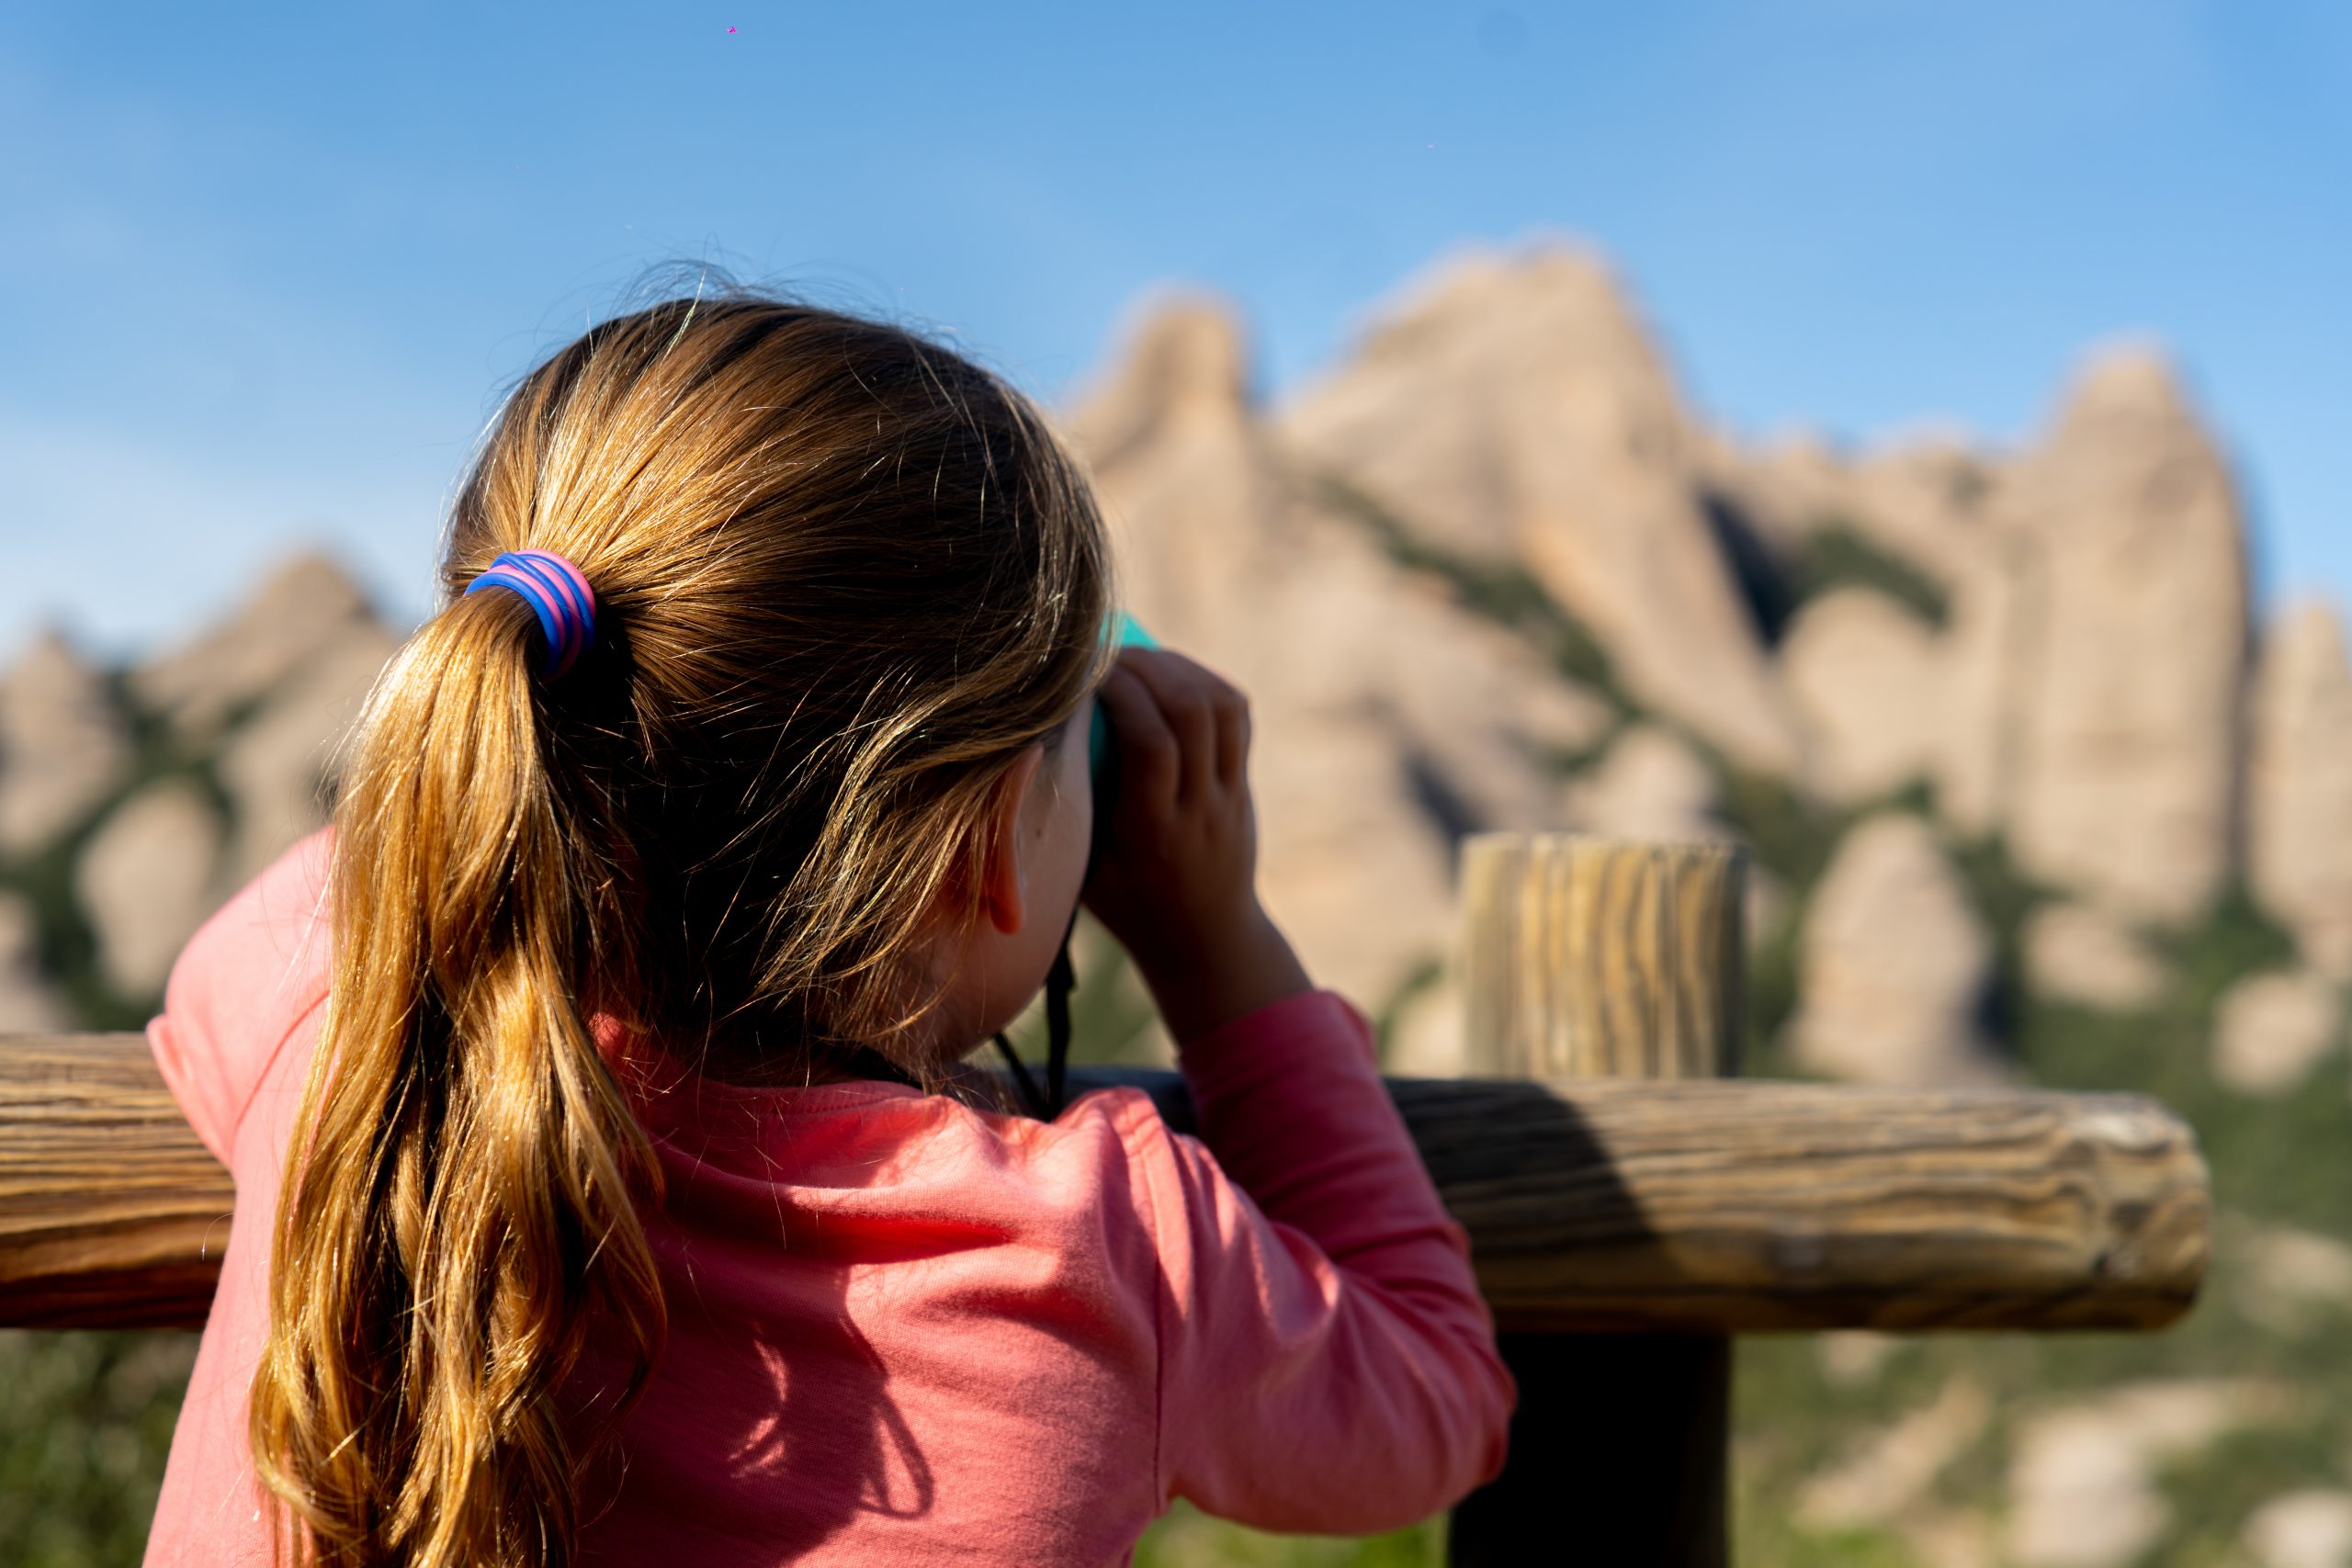 Una noia observant la Serra de Montserrat / Una niña observando la Sierra de Montserrat